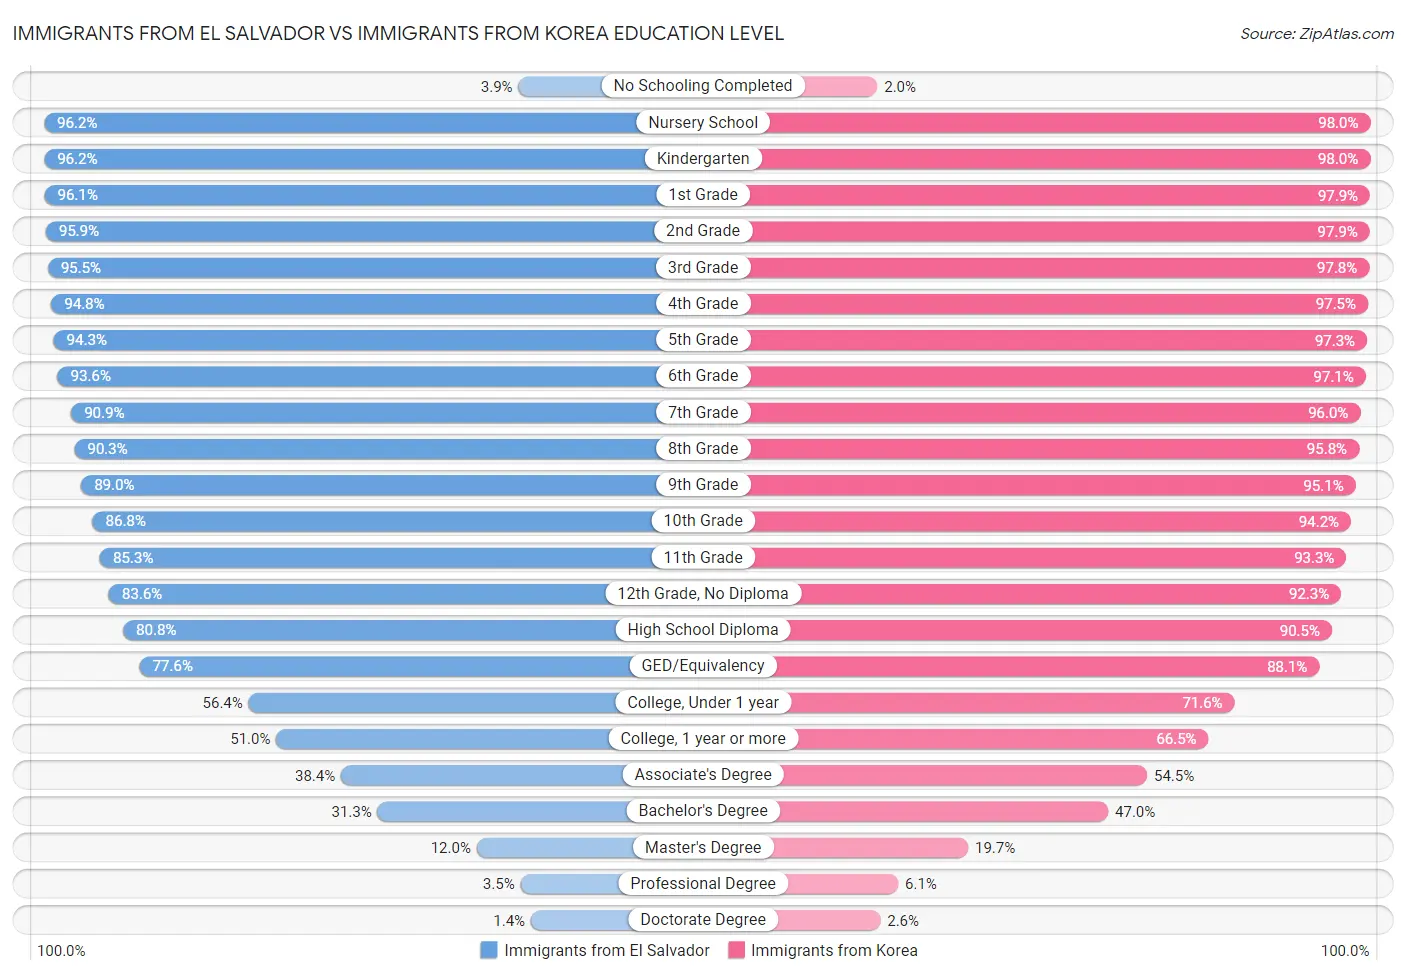 Immigrants from El Salvador vs Immigrants from Korea Education Level